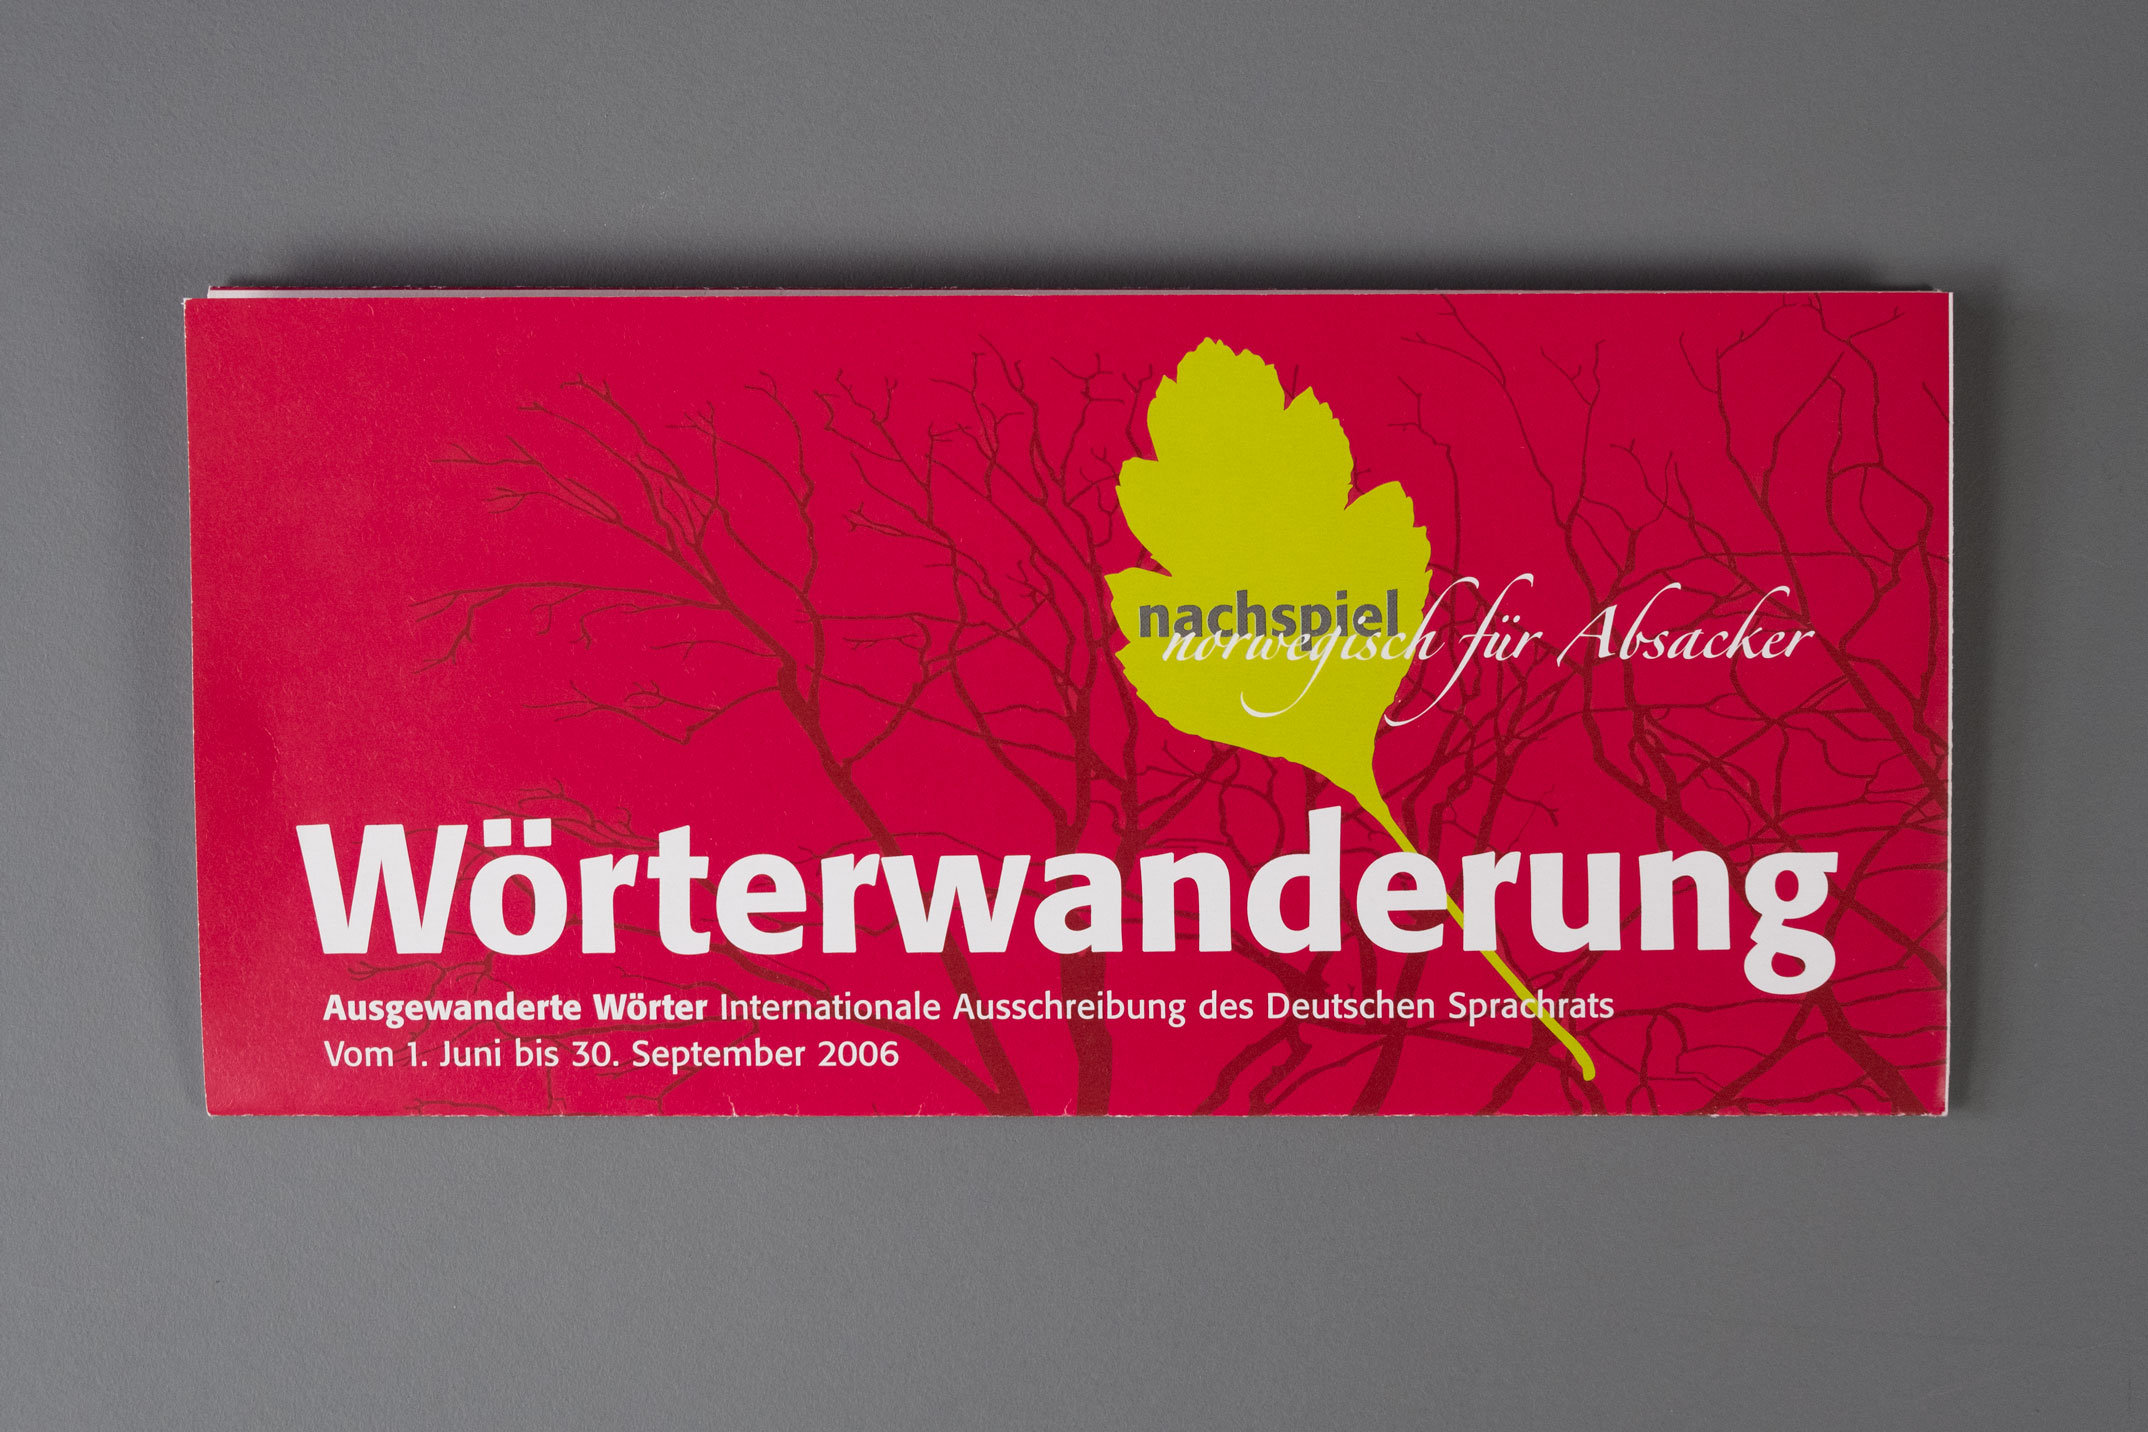 Werbekampagne zur Ausschreibung »Wörterwanderung«, Faltblatt, Titelseite, Goethe Institut